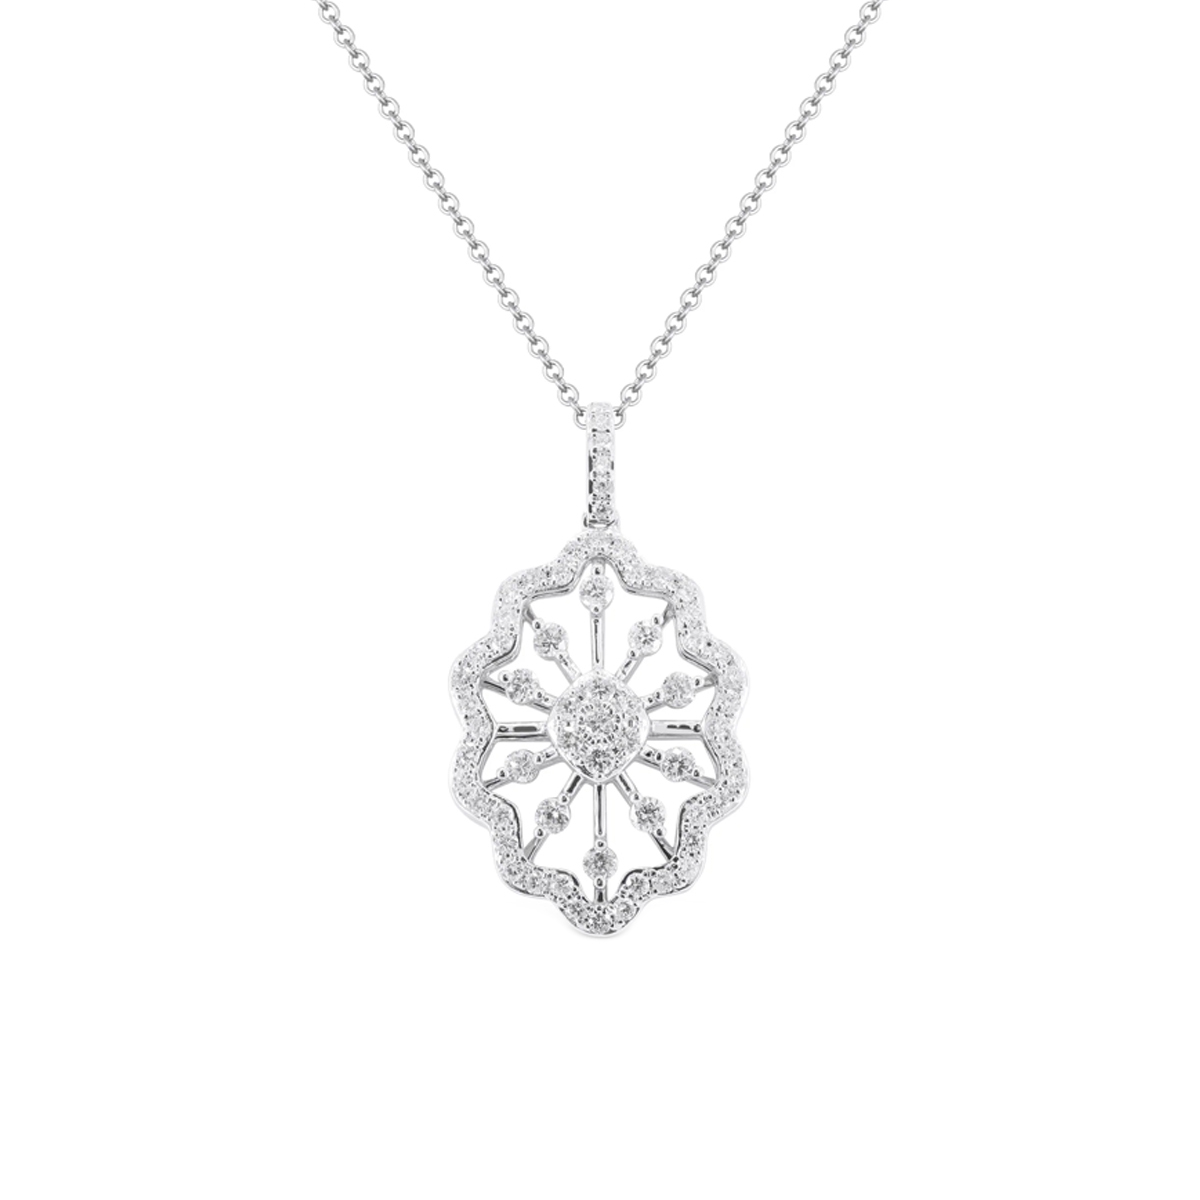 14K White Gold Open Design Diamond Pendant with Chain